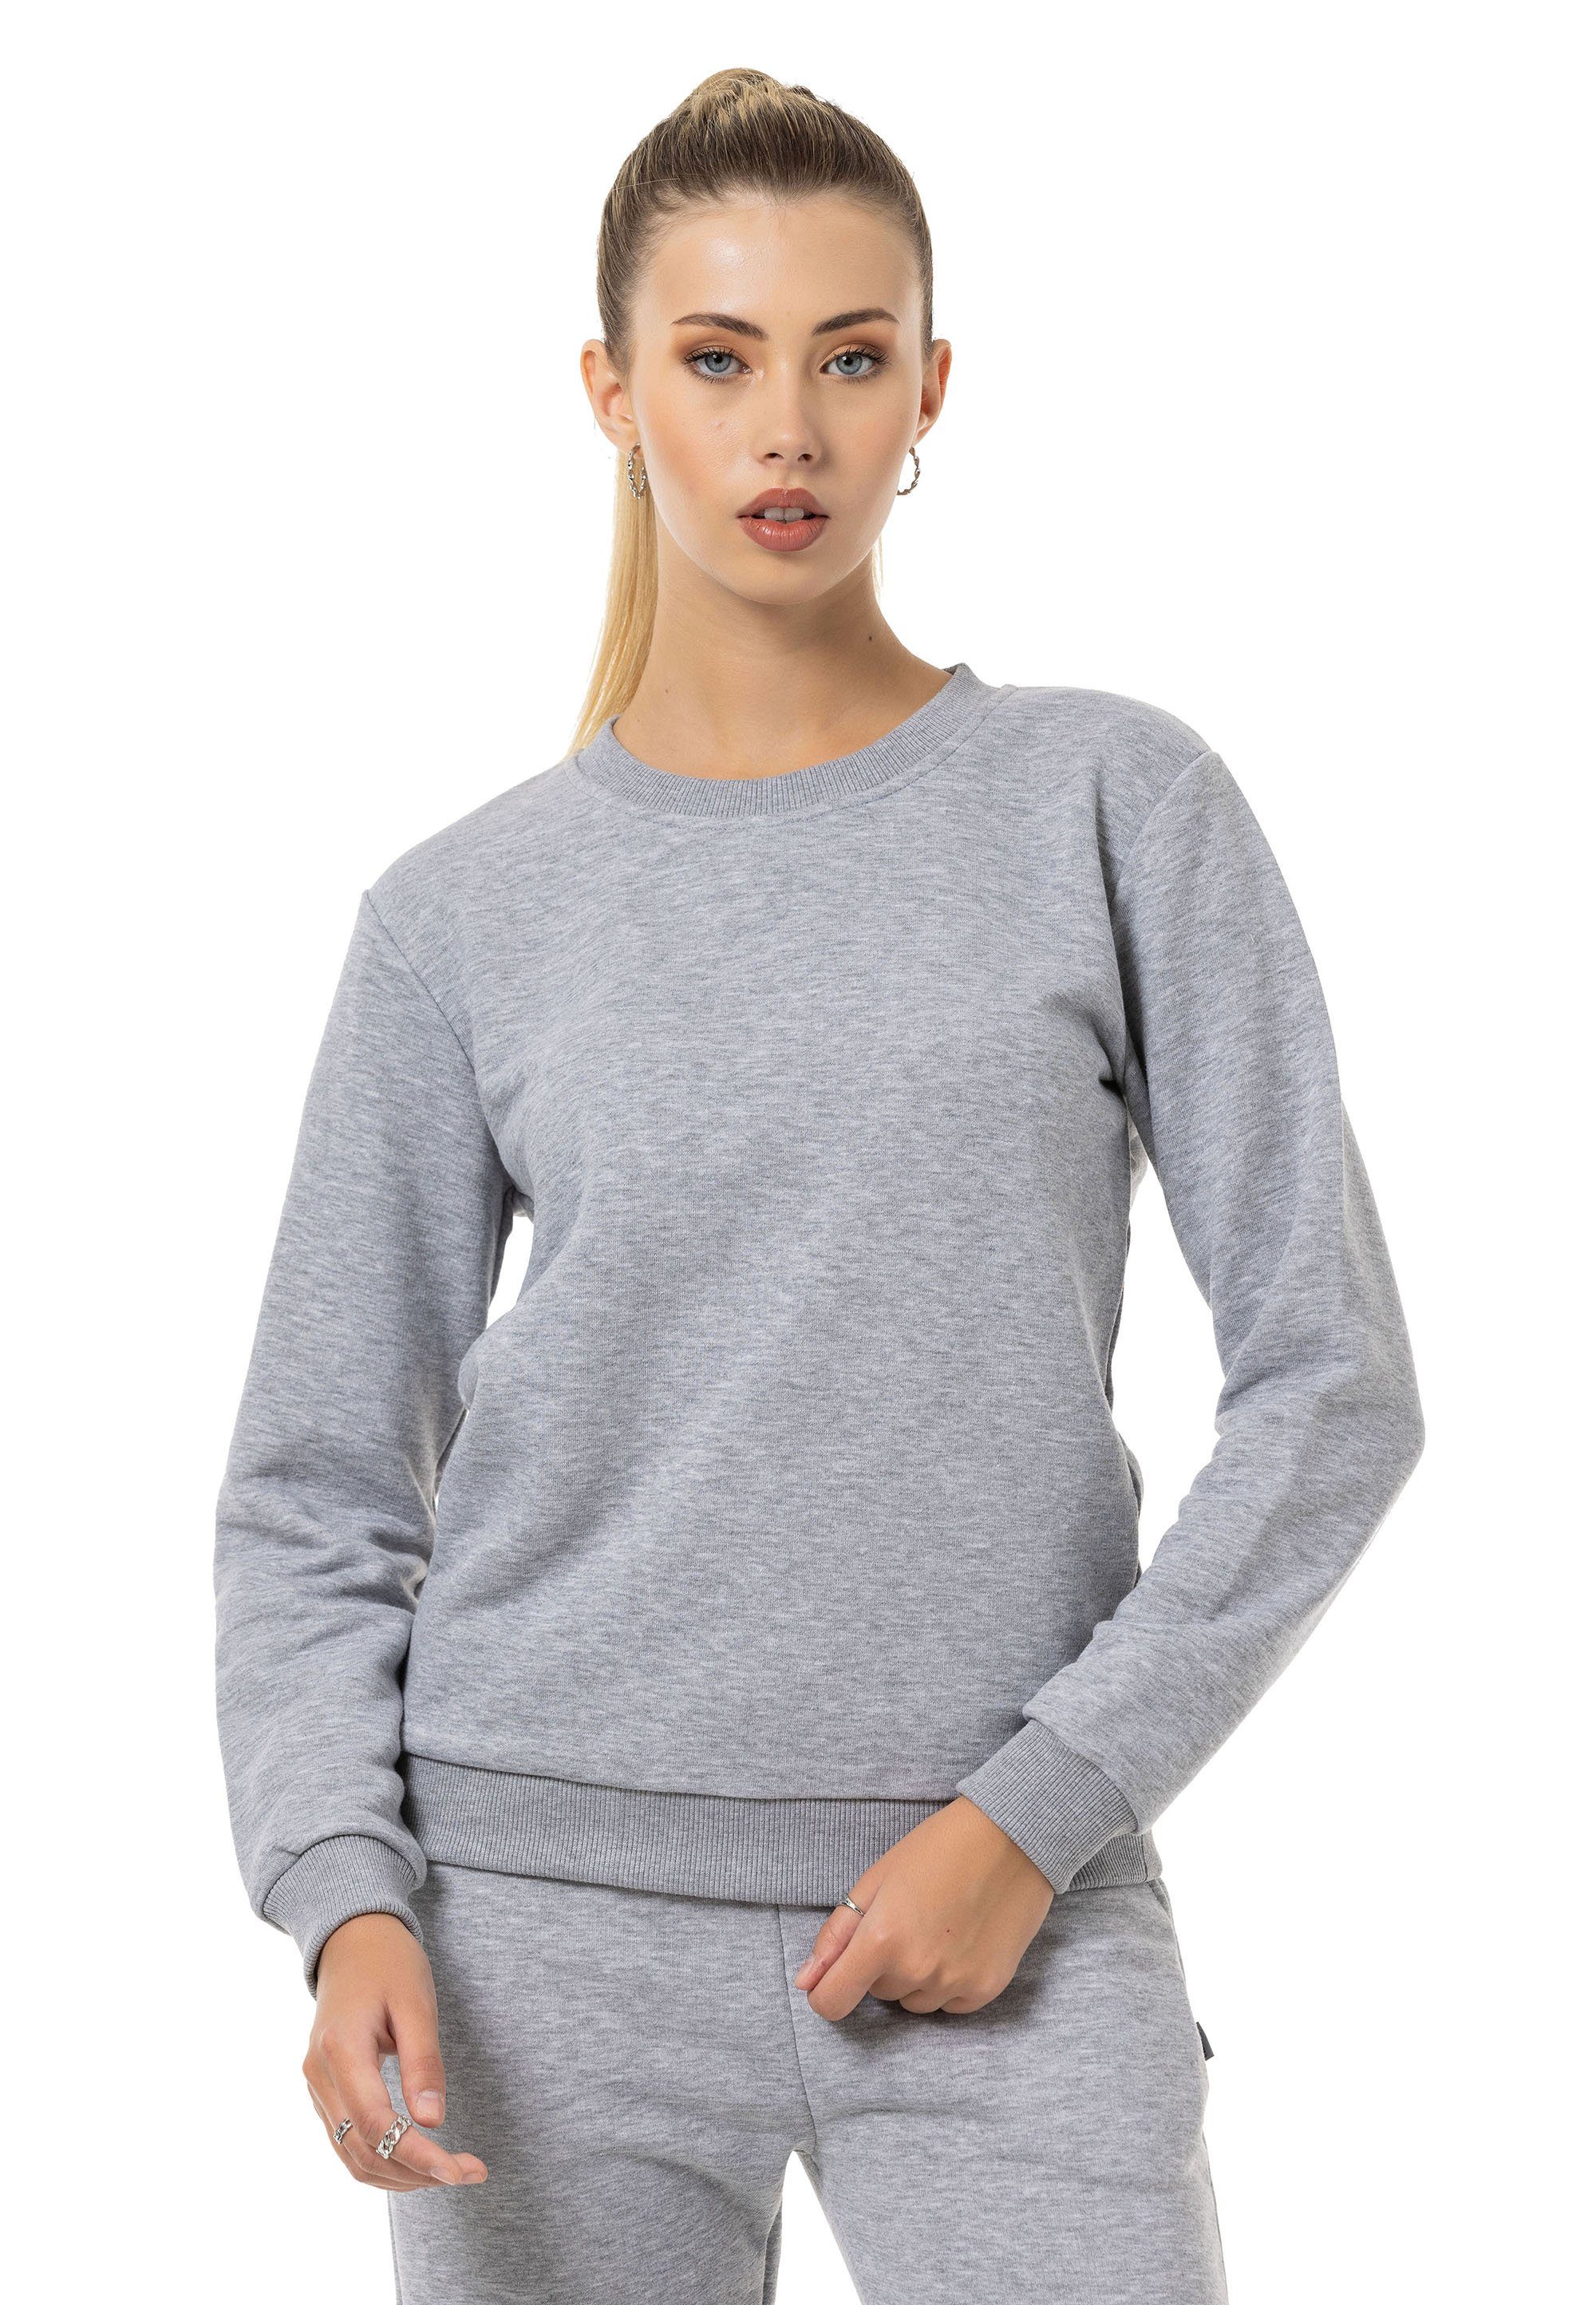 RedBridge Sweatshirt Rundhals Pullover Premium Qualität Grau-Melange | Sweatshirts